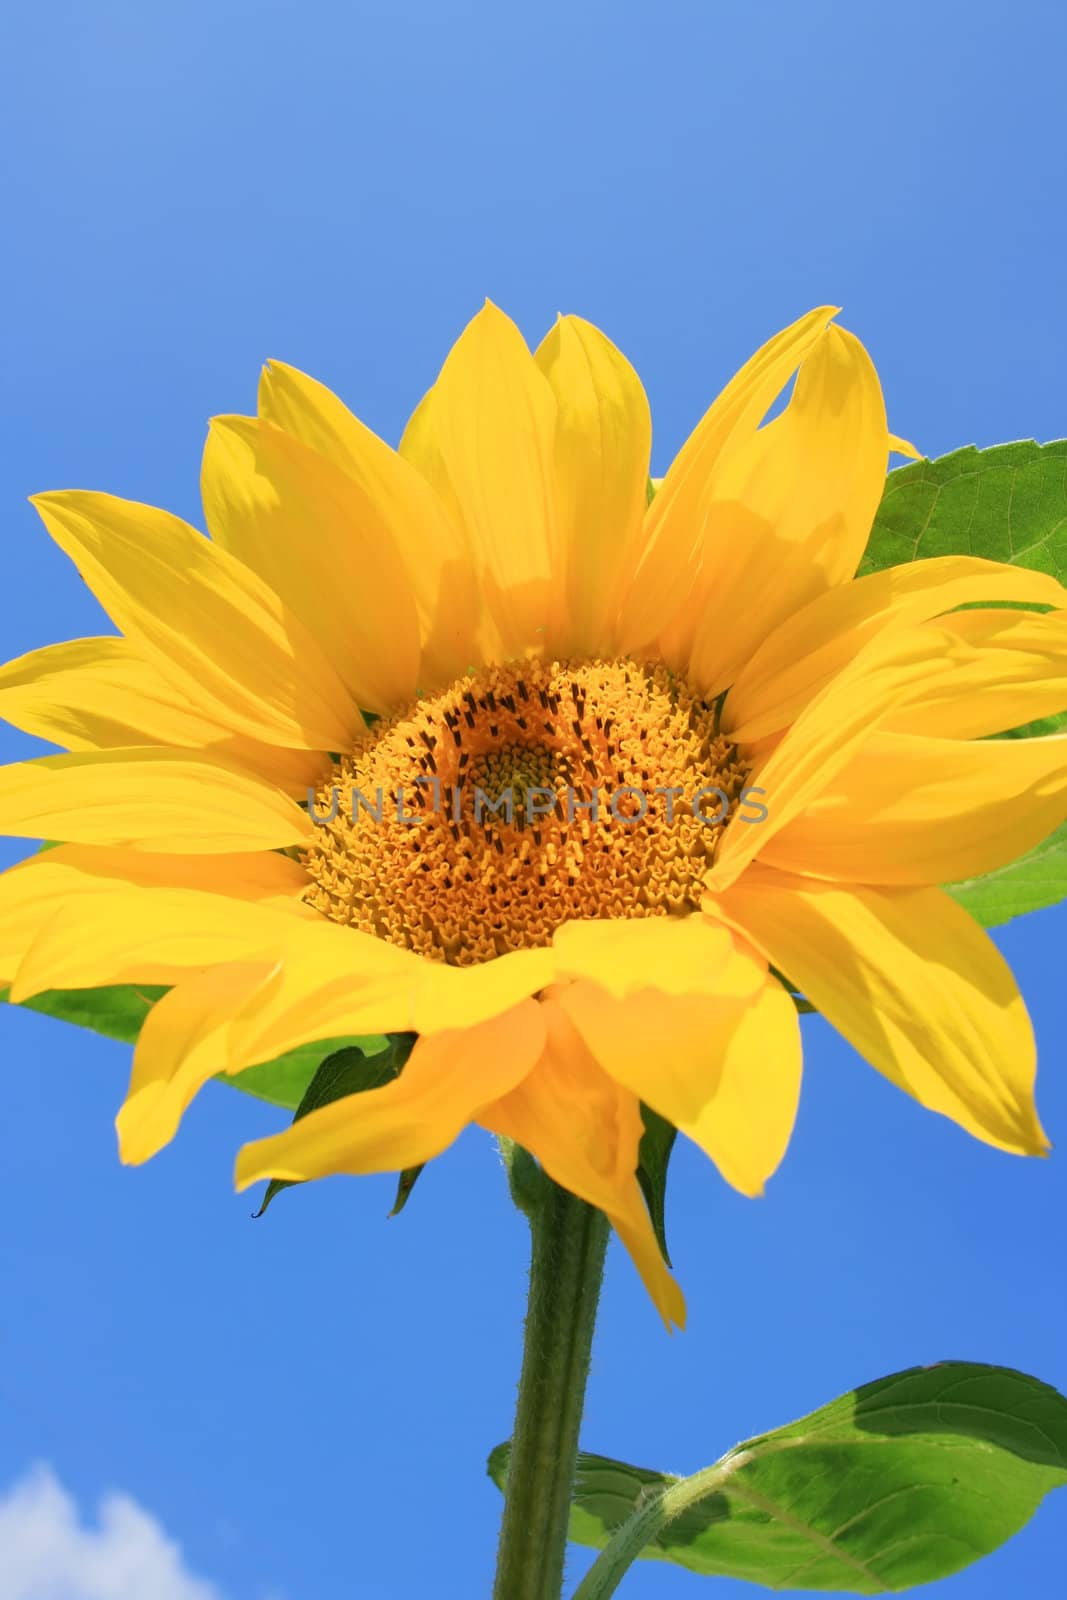 Sunflower by Ragnar